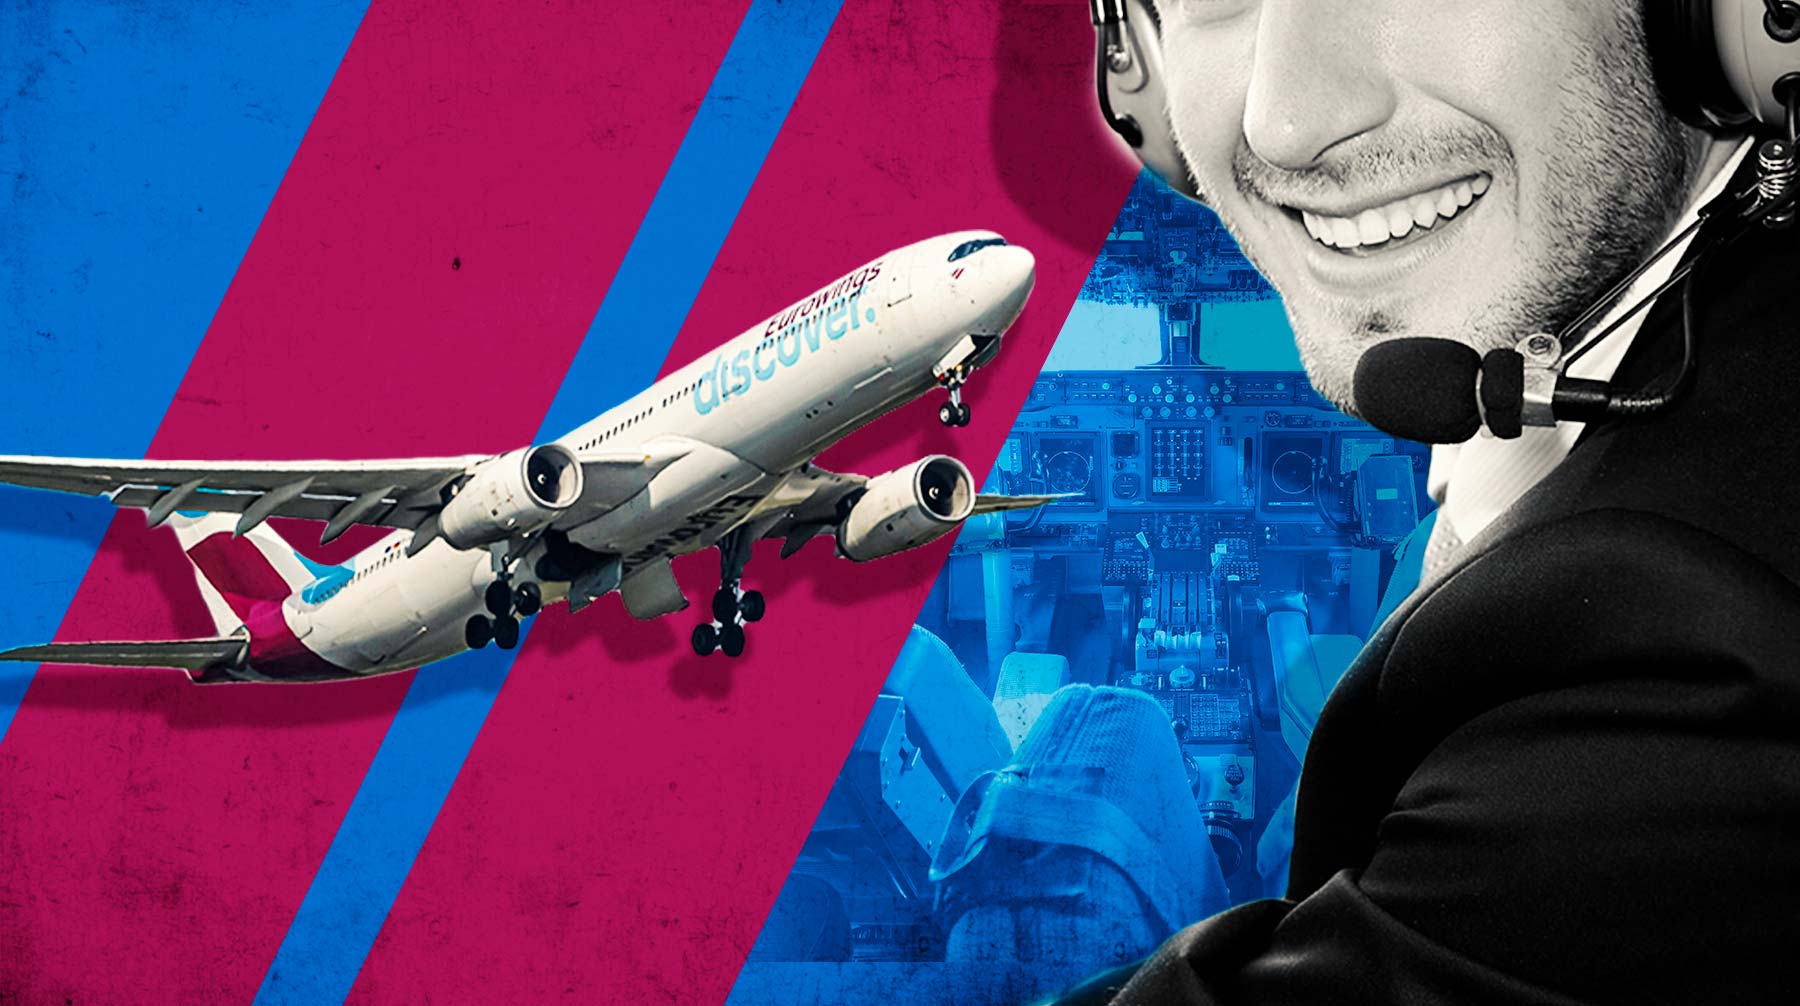 Что раздражает сотрудников авиакомпаний во время задержки рейса и отражается ли это на зарплатах — в материале Daily Storm Коллаж: Daily Storm